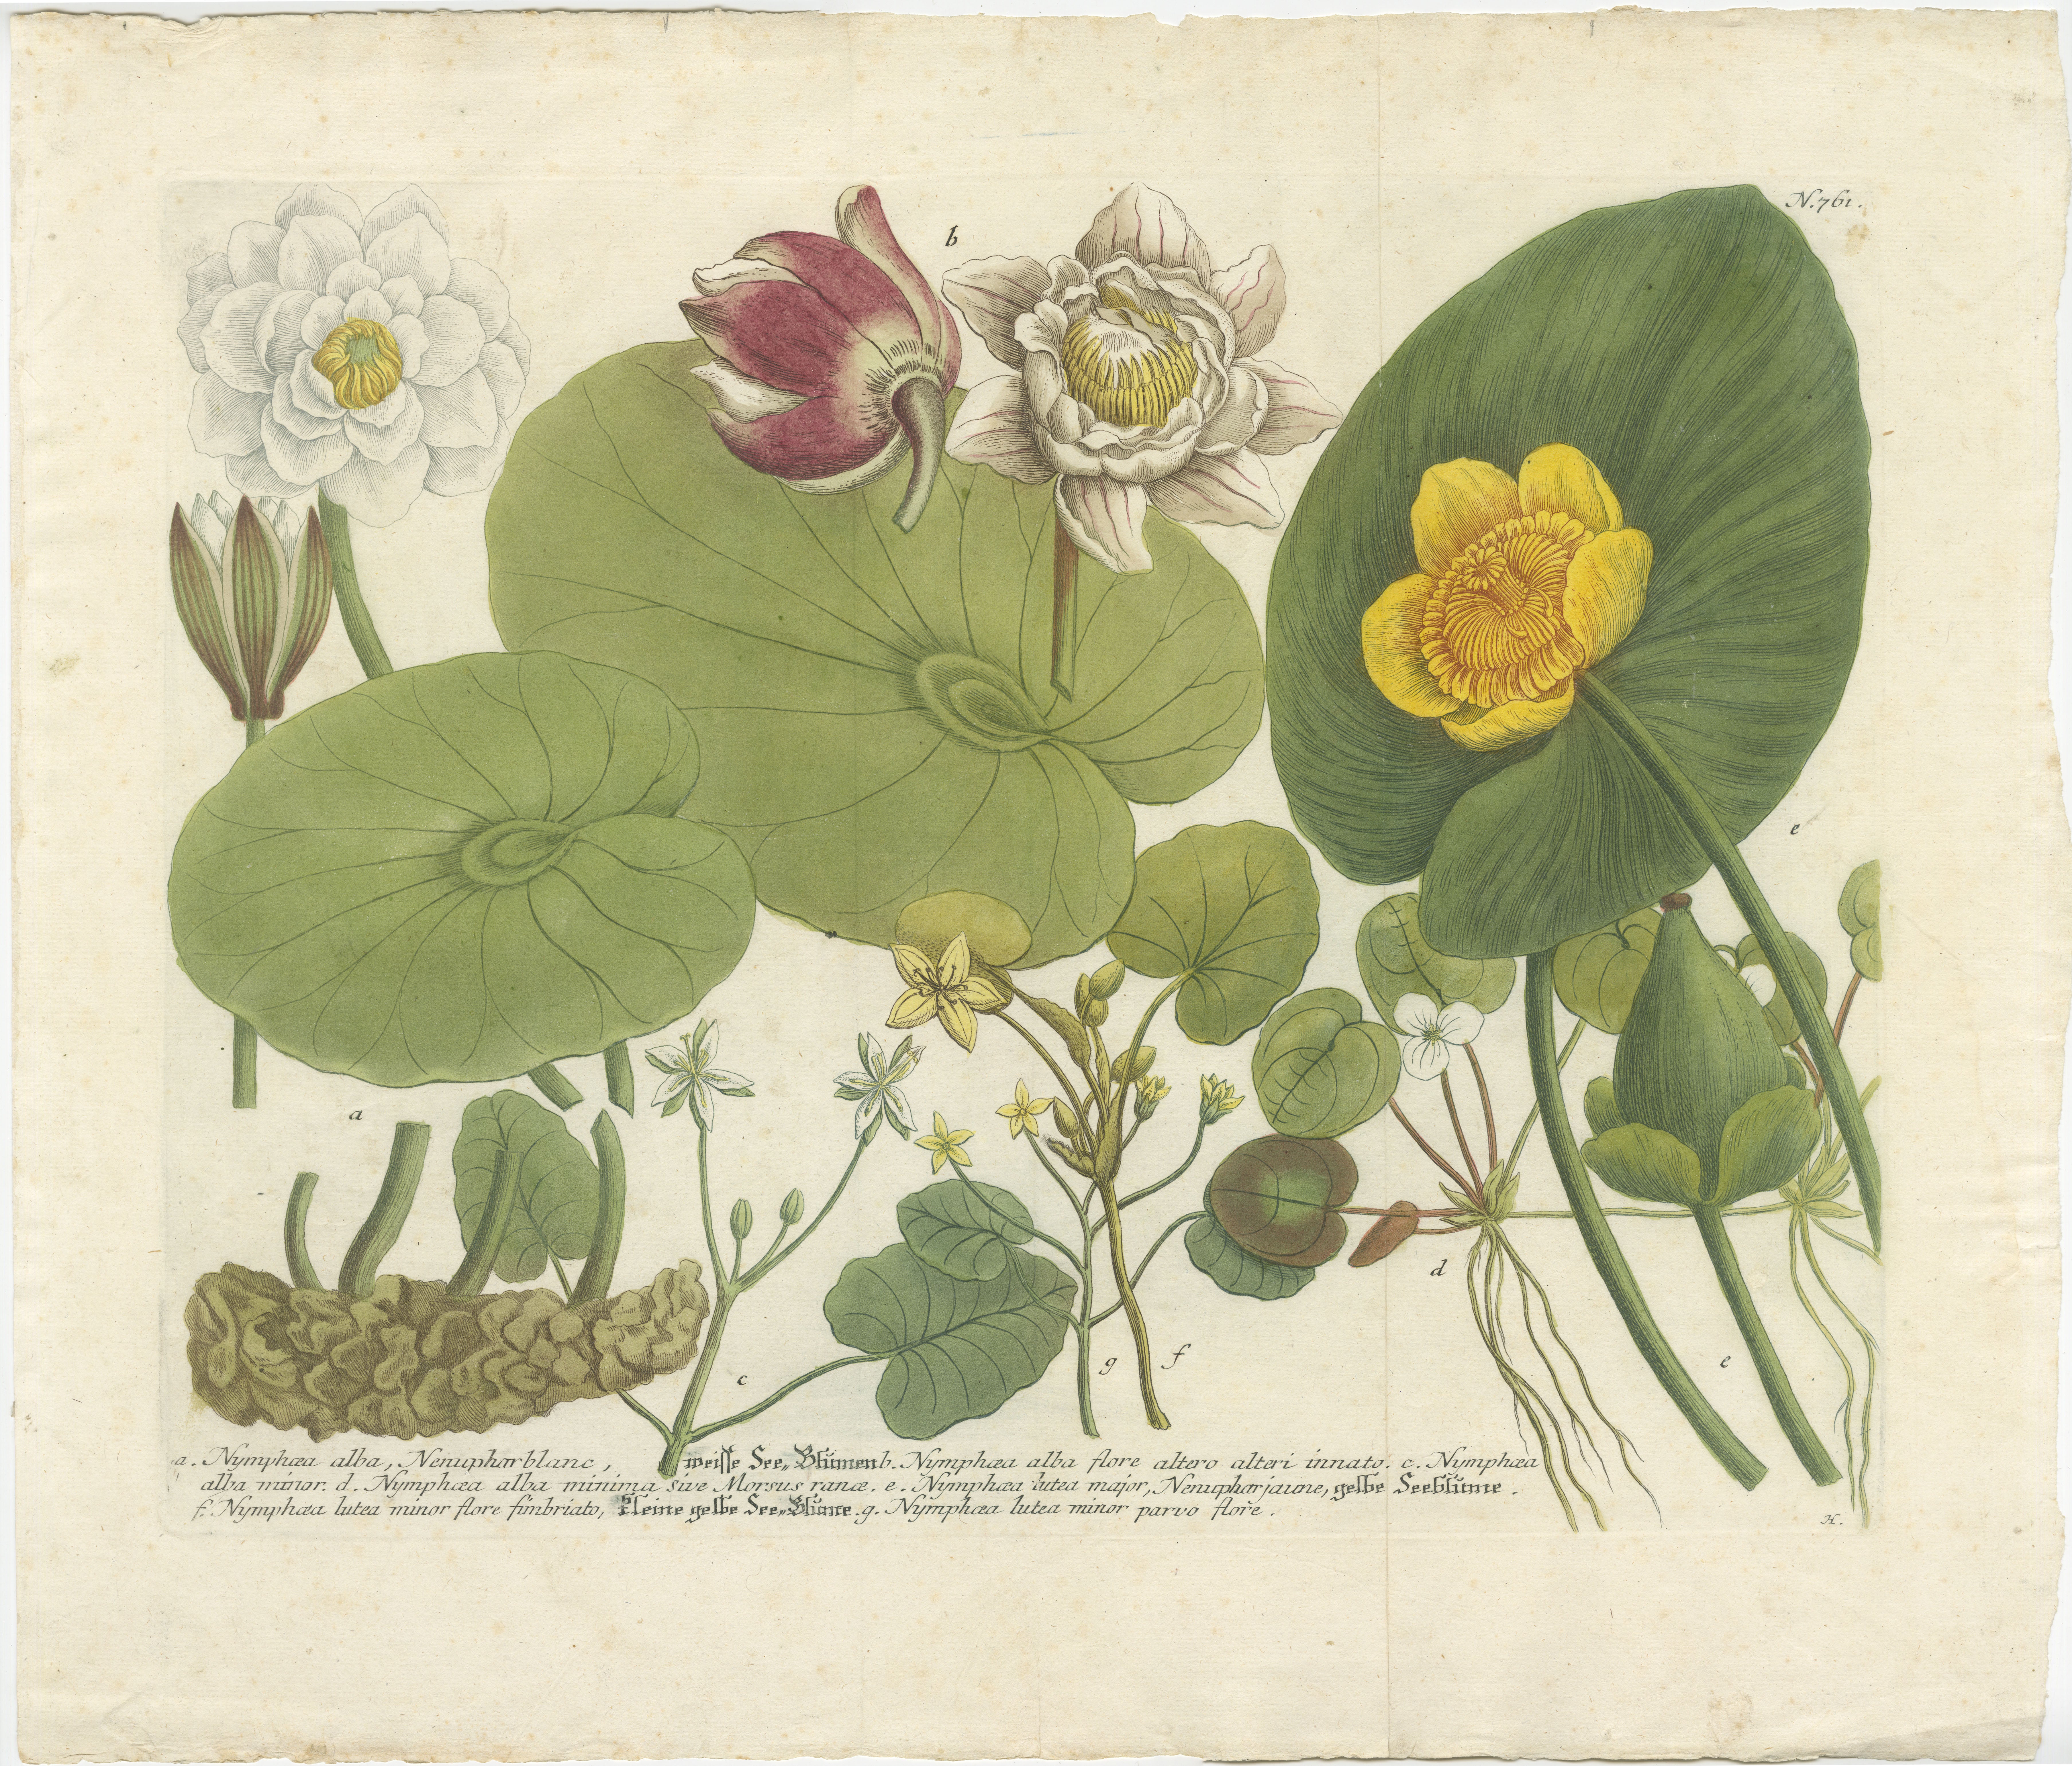 Cette image est une gravure ancienne colorée tirée d'une œuvre botanique de J.W. Weinmann, intitulé 